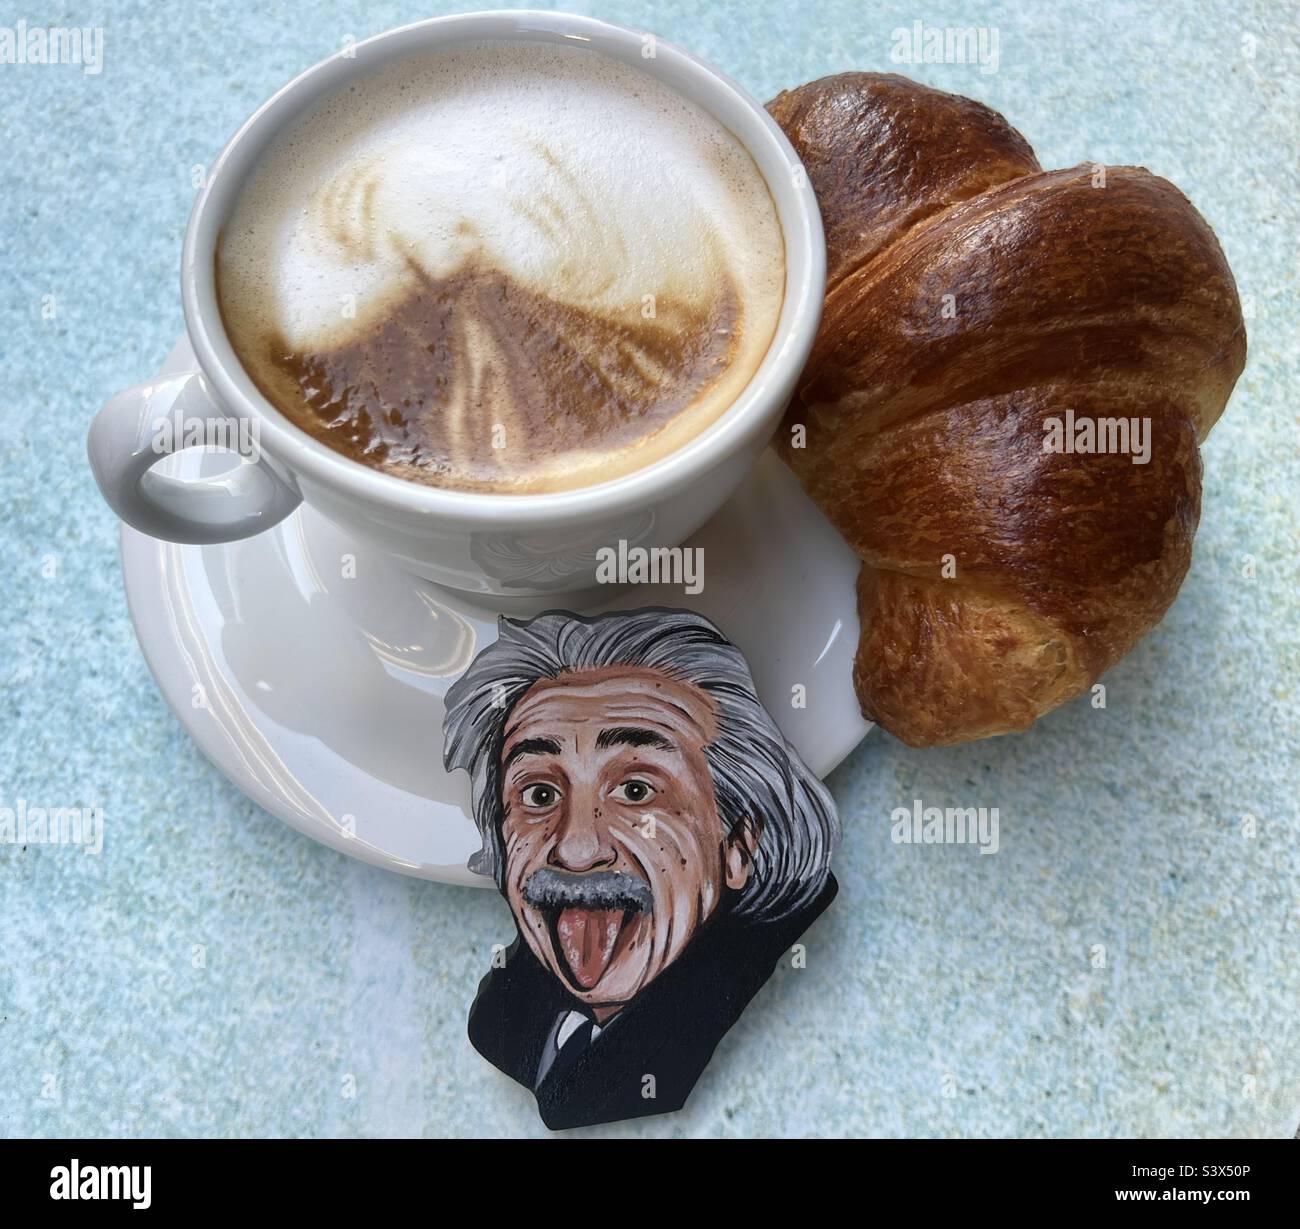 Petit déjeuner au bar avec croissant, cappuccino et un visage artistique peint par Einstein Banque D'Images